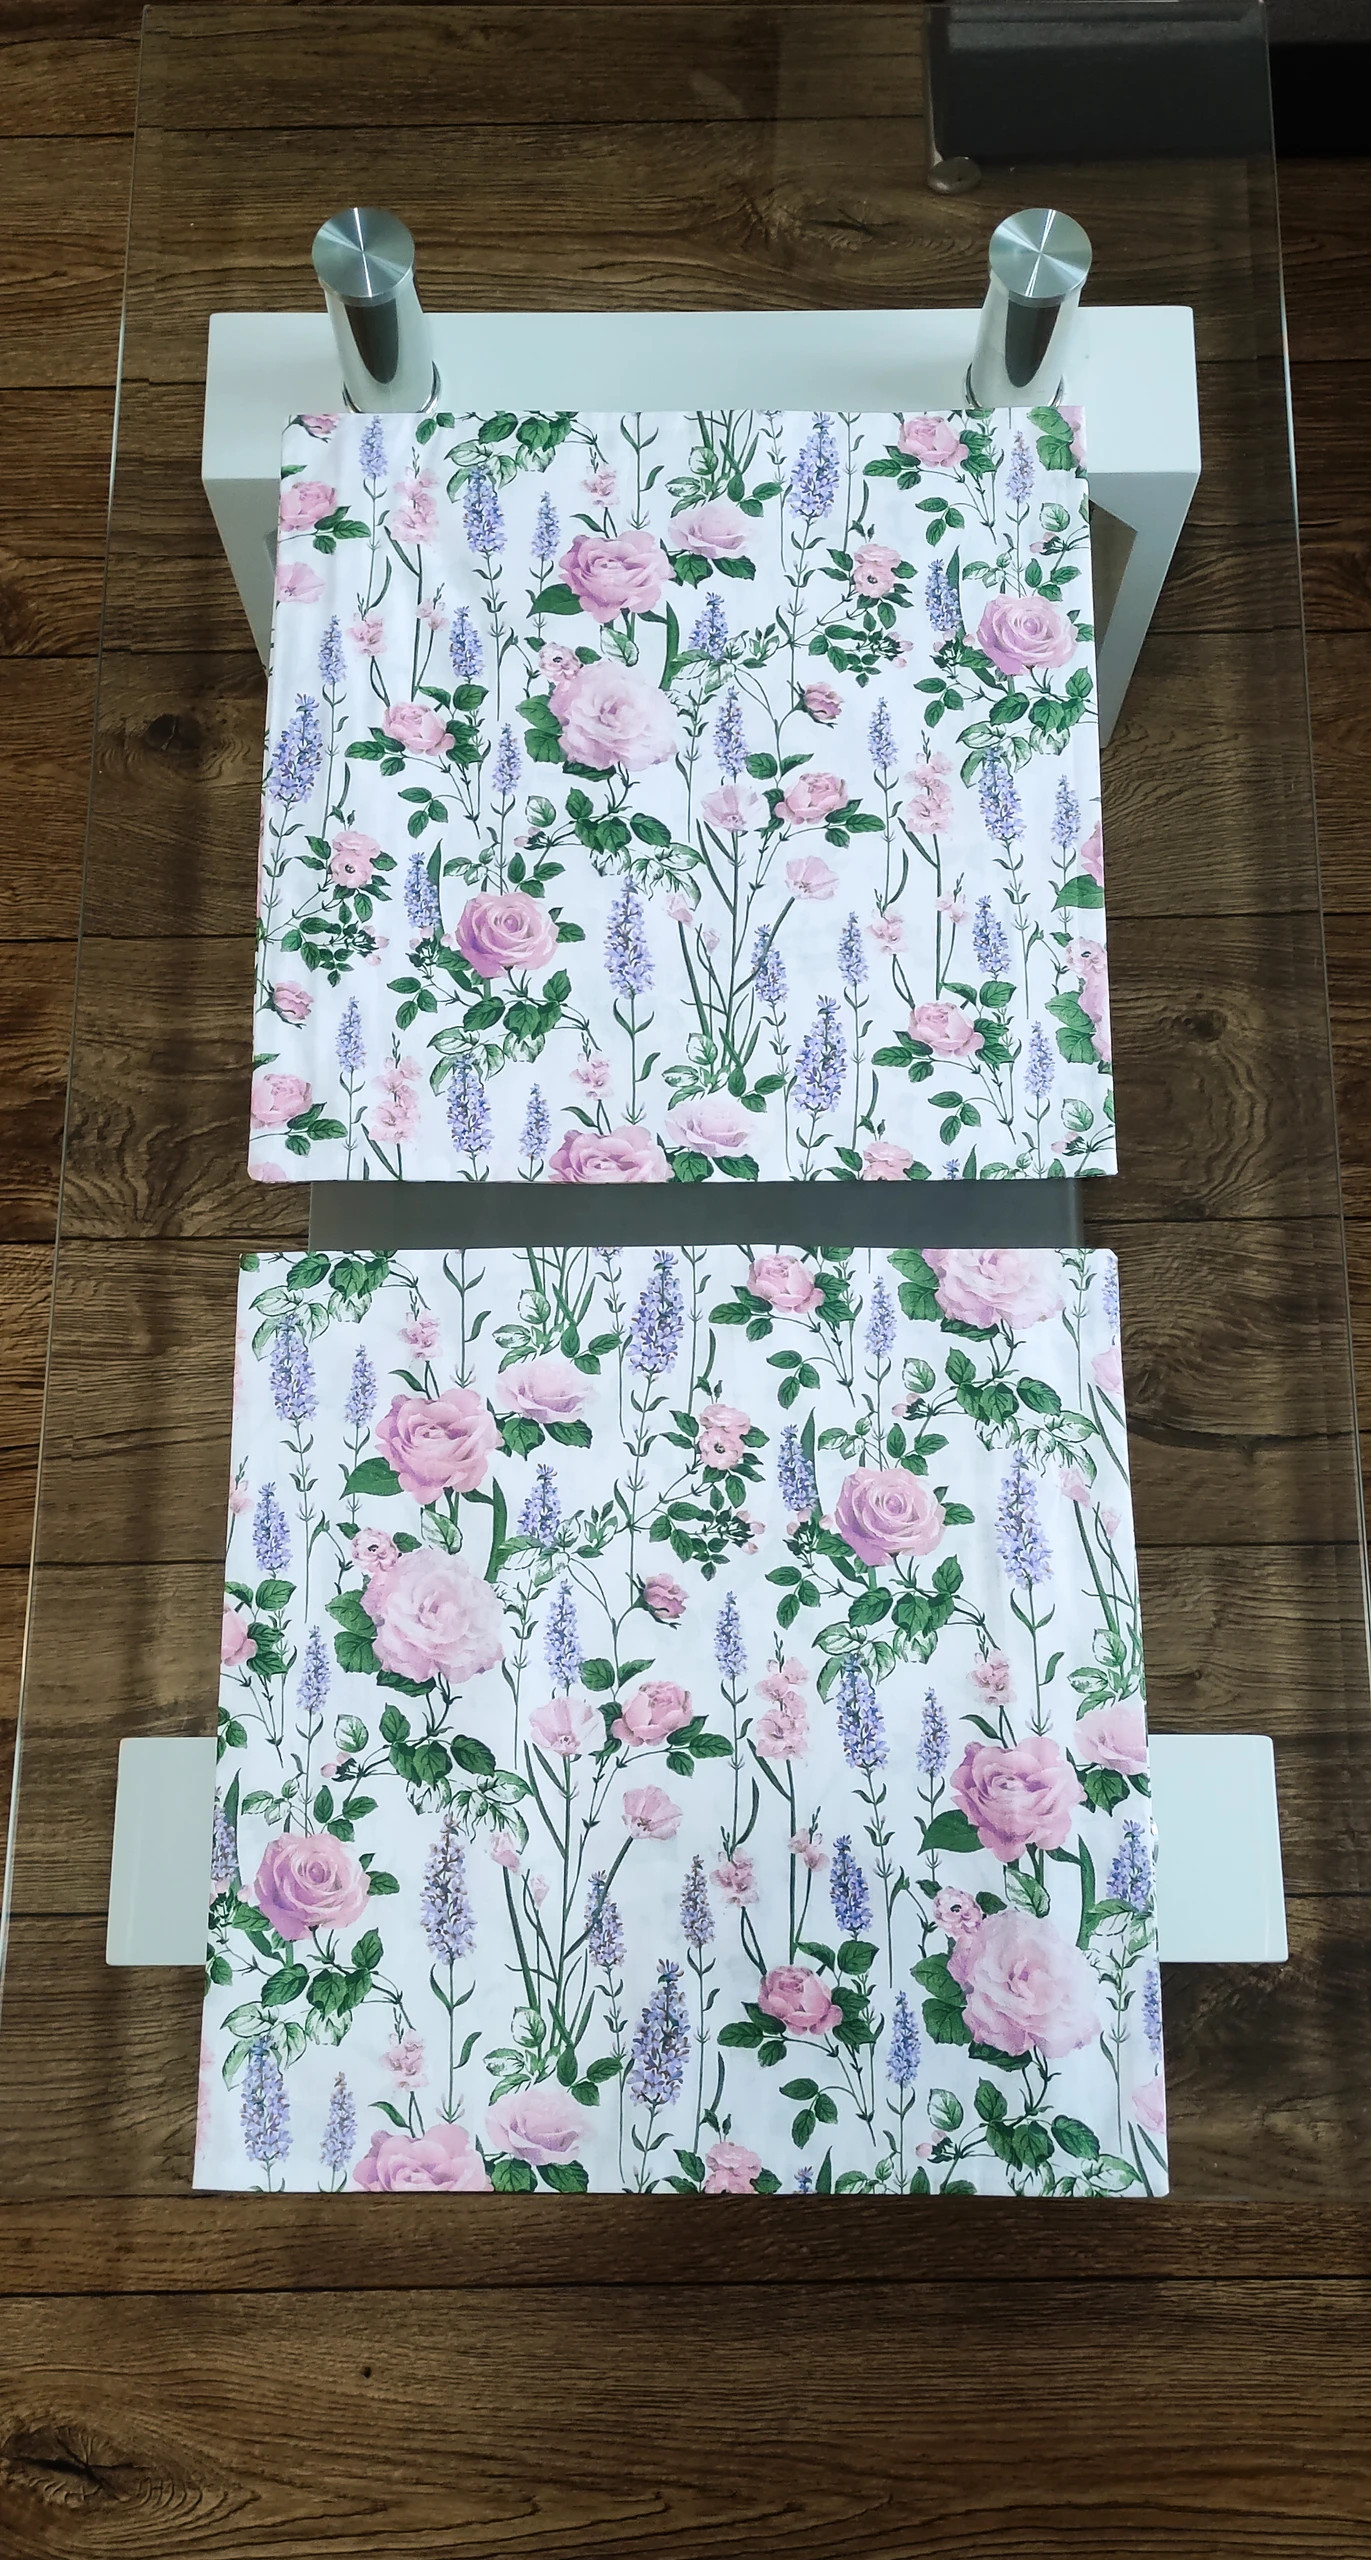 Poszewki na poduszki fioletowe białe róż pudrowy kwiatki lawenda prowansalskie